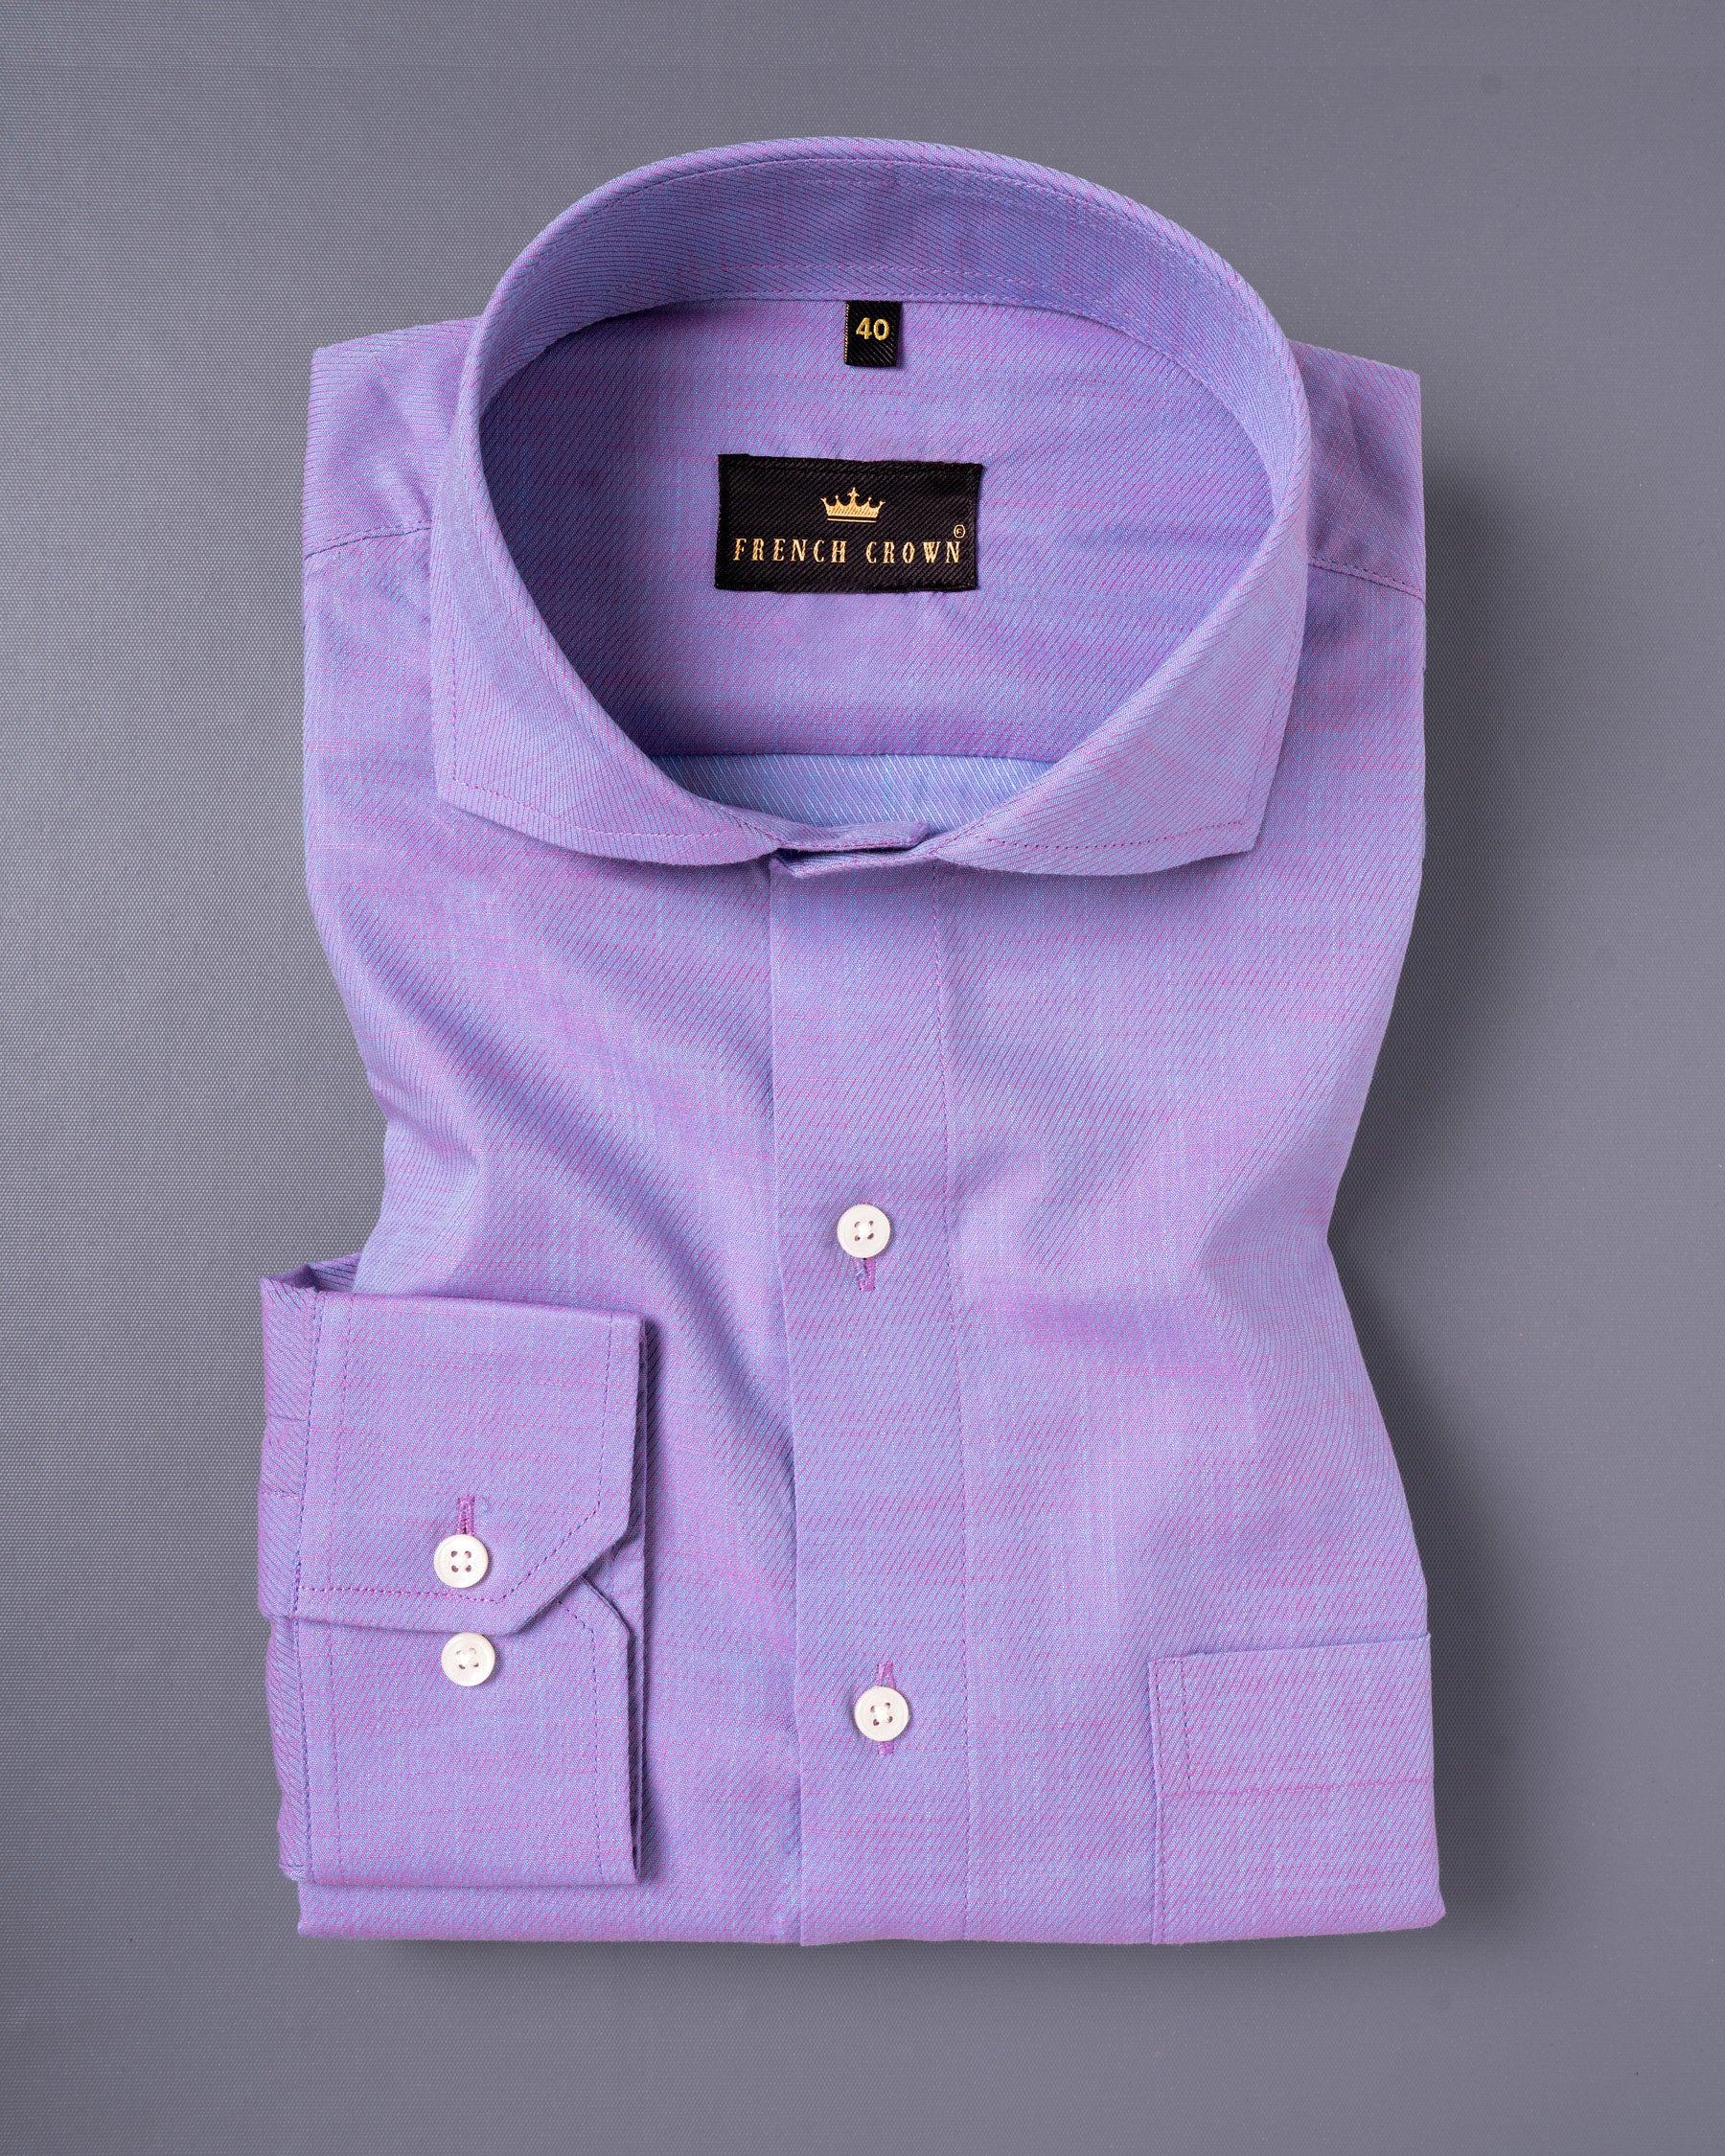 Biloba Purple Premium Cotton shirt 4984-CA-38,4984-CA-H-38,4984-CA-39,4984-CA-H-39,4984-CA-40,4984-CA-H-40,4984-CA-42,4984-CA-H-42,4984-CA-44,4984-CA-H-44,4984-CA-46,4984-CA-H-46,4984-CA-48,4984-CA-H-48,4984-CA-50,4984-CA-H-50,4984-CA-52,4984-CA-H-52